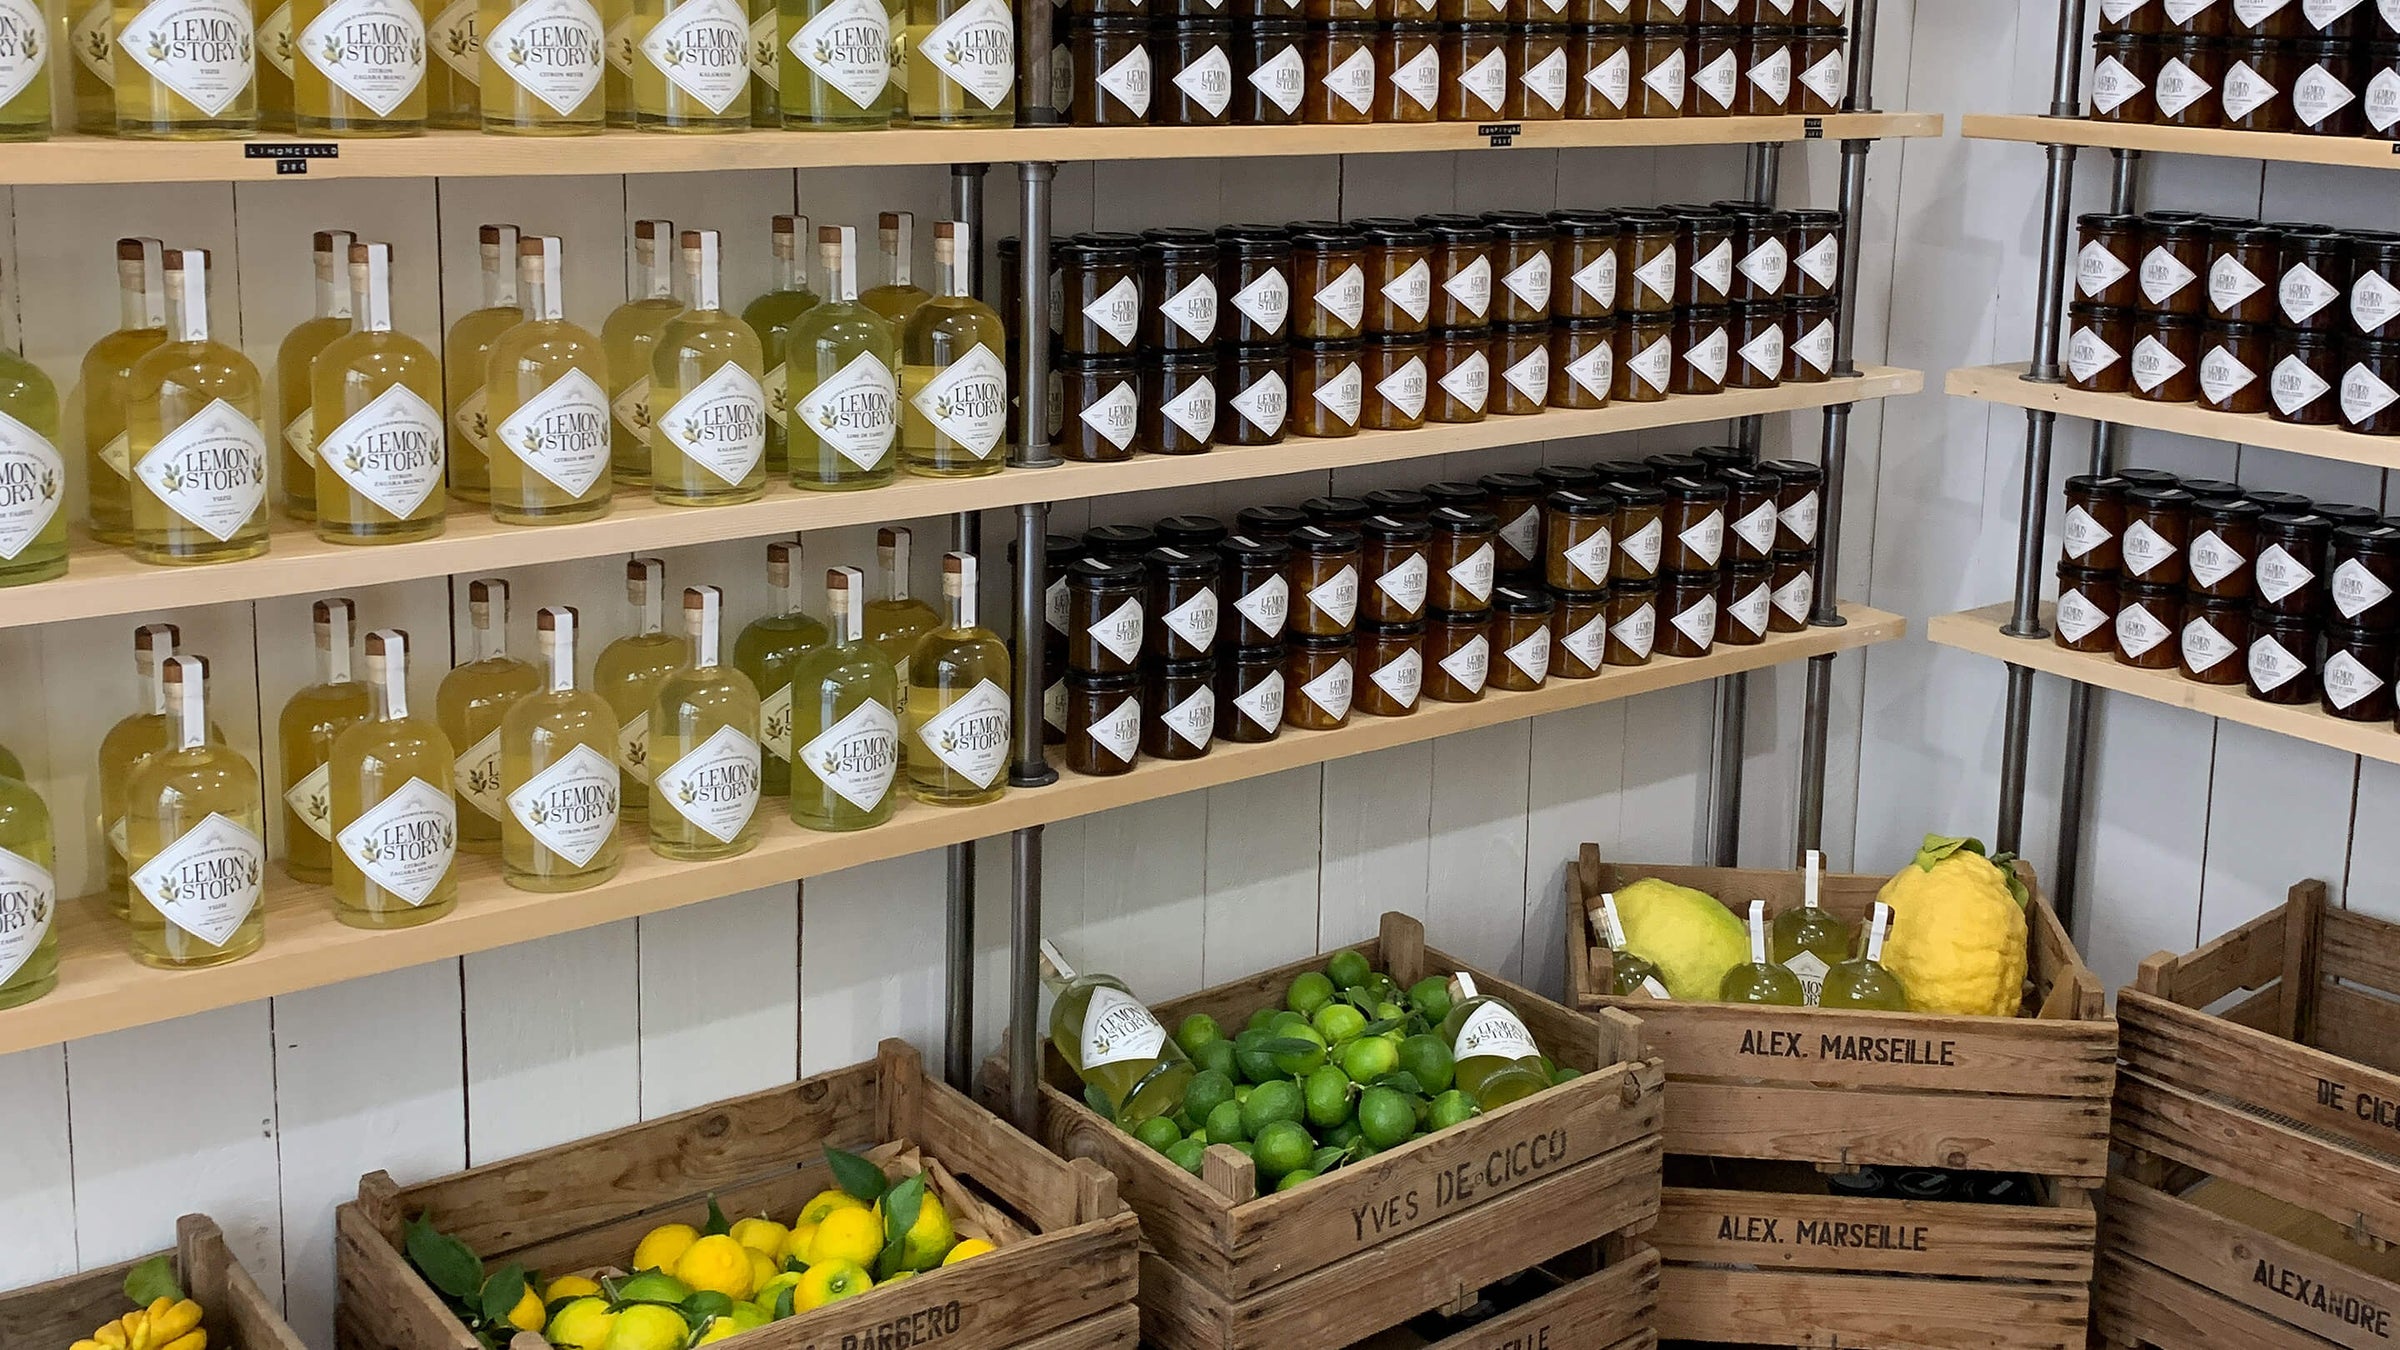 La boutique - Plantation d'agrumes rares Lemon Story - La Crau France